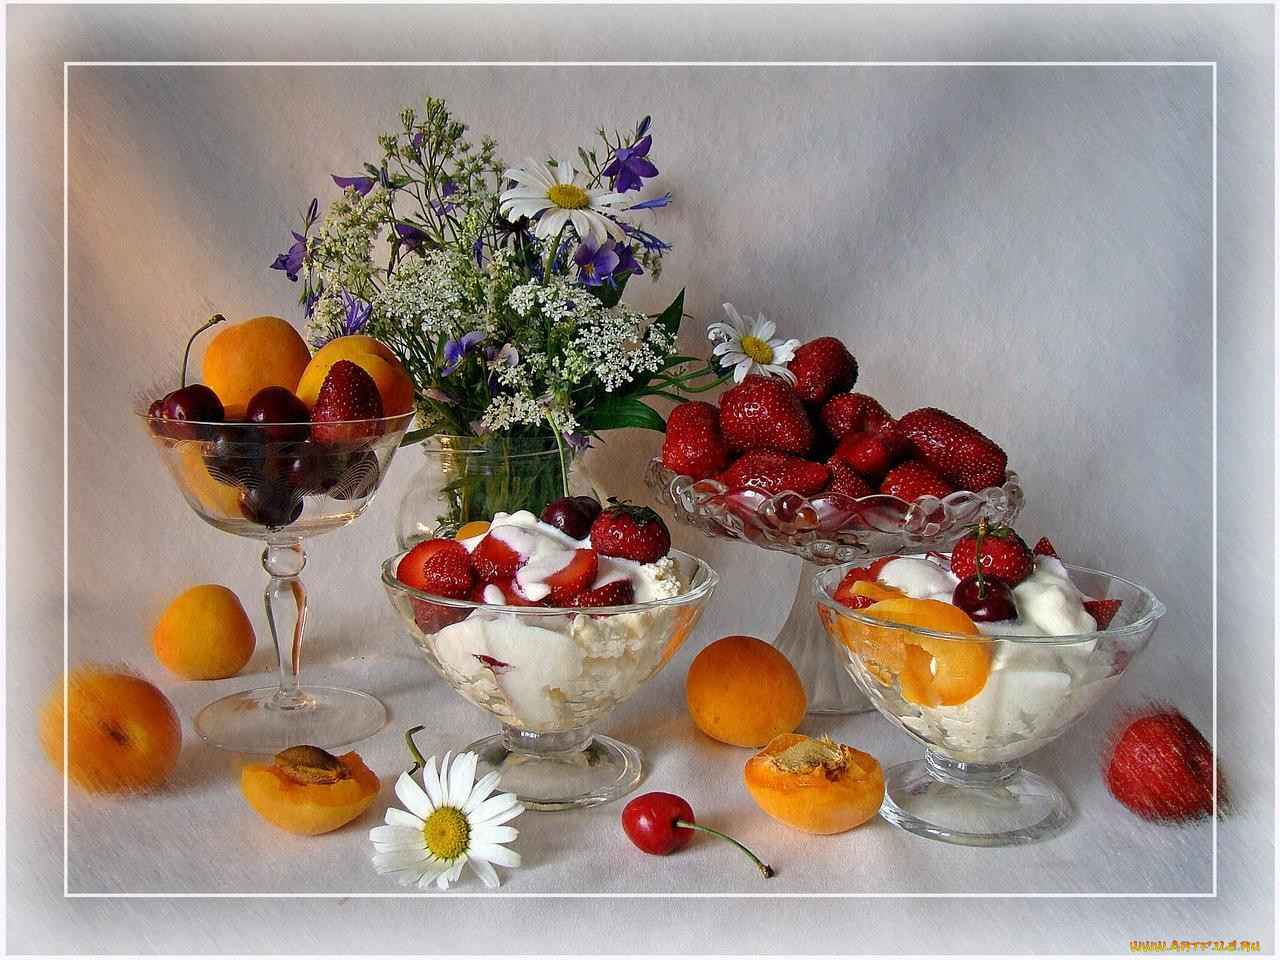 Хорошего дня фрукты. Натюрморт с цветами и фруктами. Натюрморт с фруктами и ягодами. Красивые летние натюрморты. Натюрморт праздничный стол.